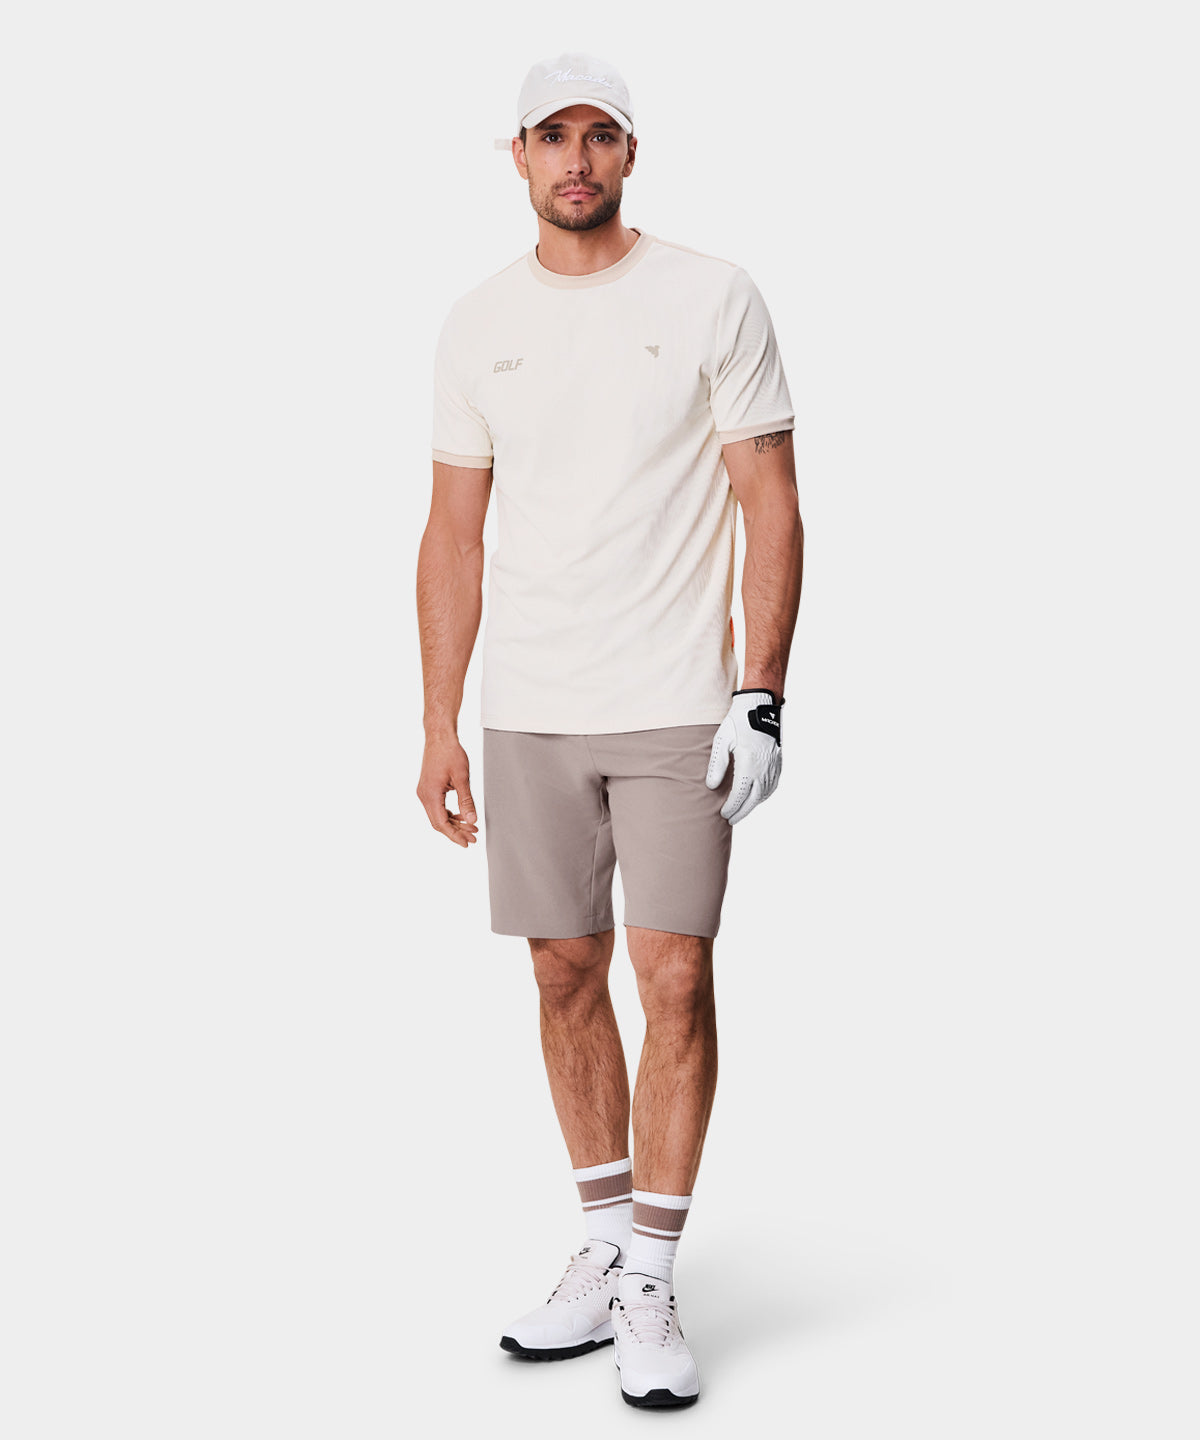 Nolan Charcoal Polo Shirt - Macade Golf